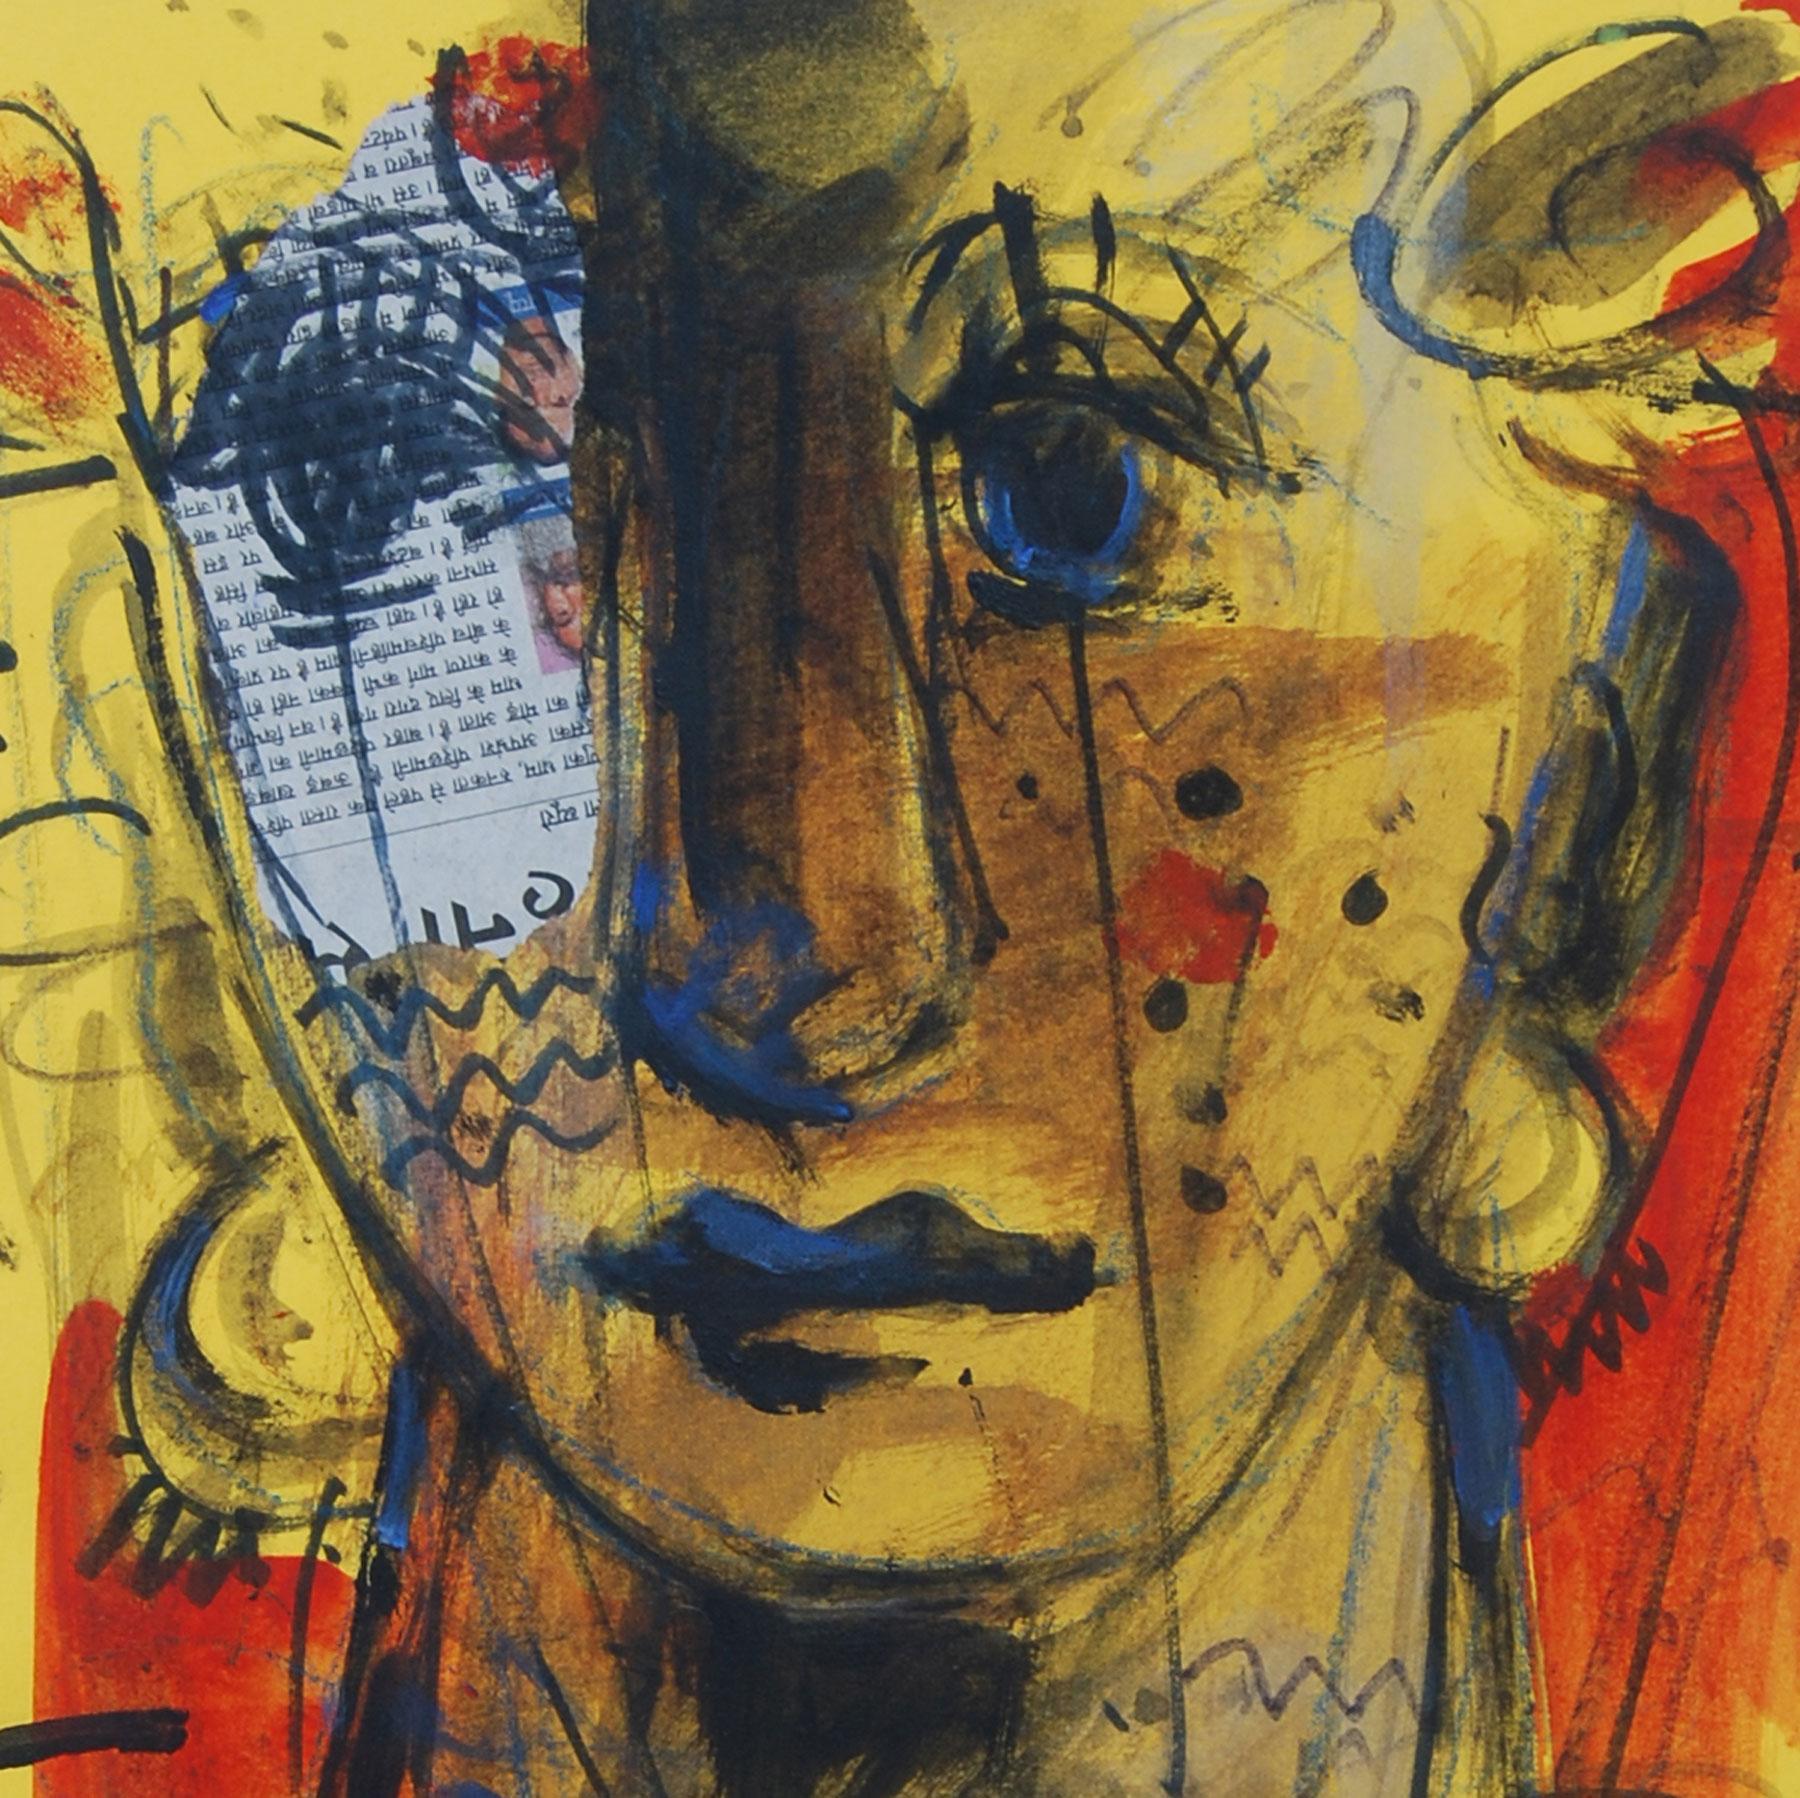 Man & Frau, Gesichter, Mixed Media, Rot, Blau, Braun von Indian Artist „In Stock““ (Grau), Portrait Painting, von Sekhar Kar